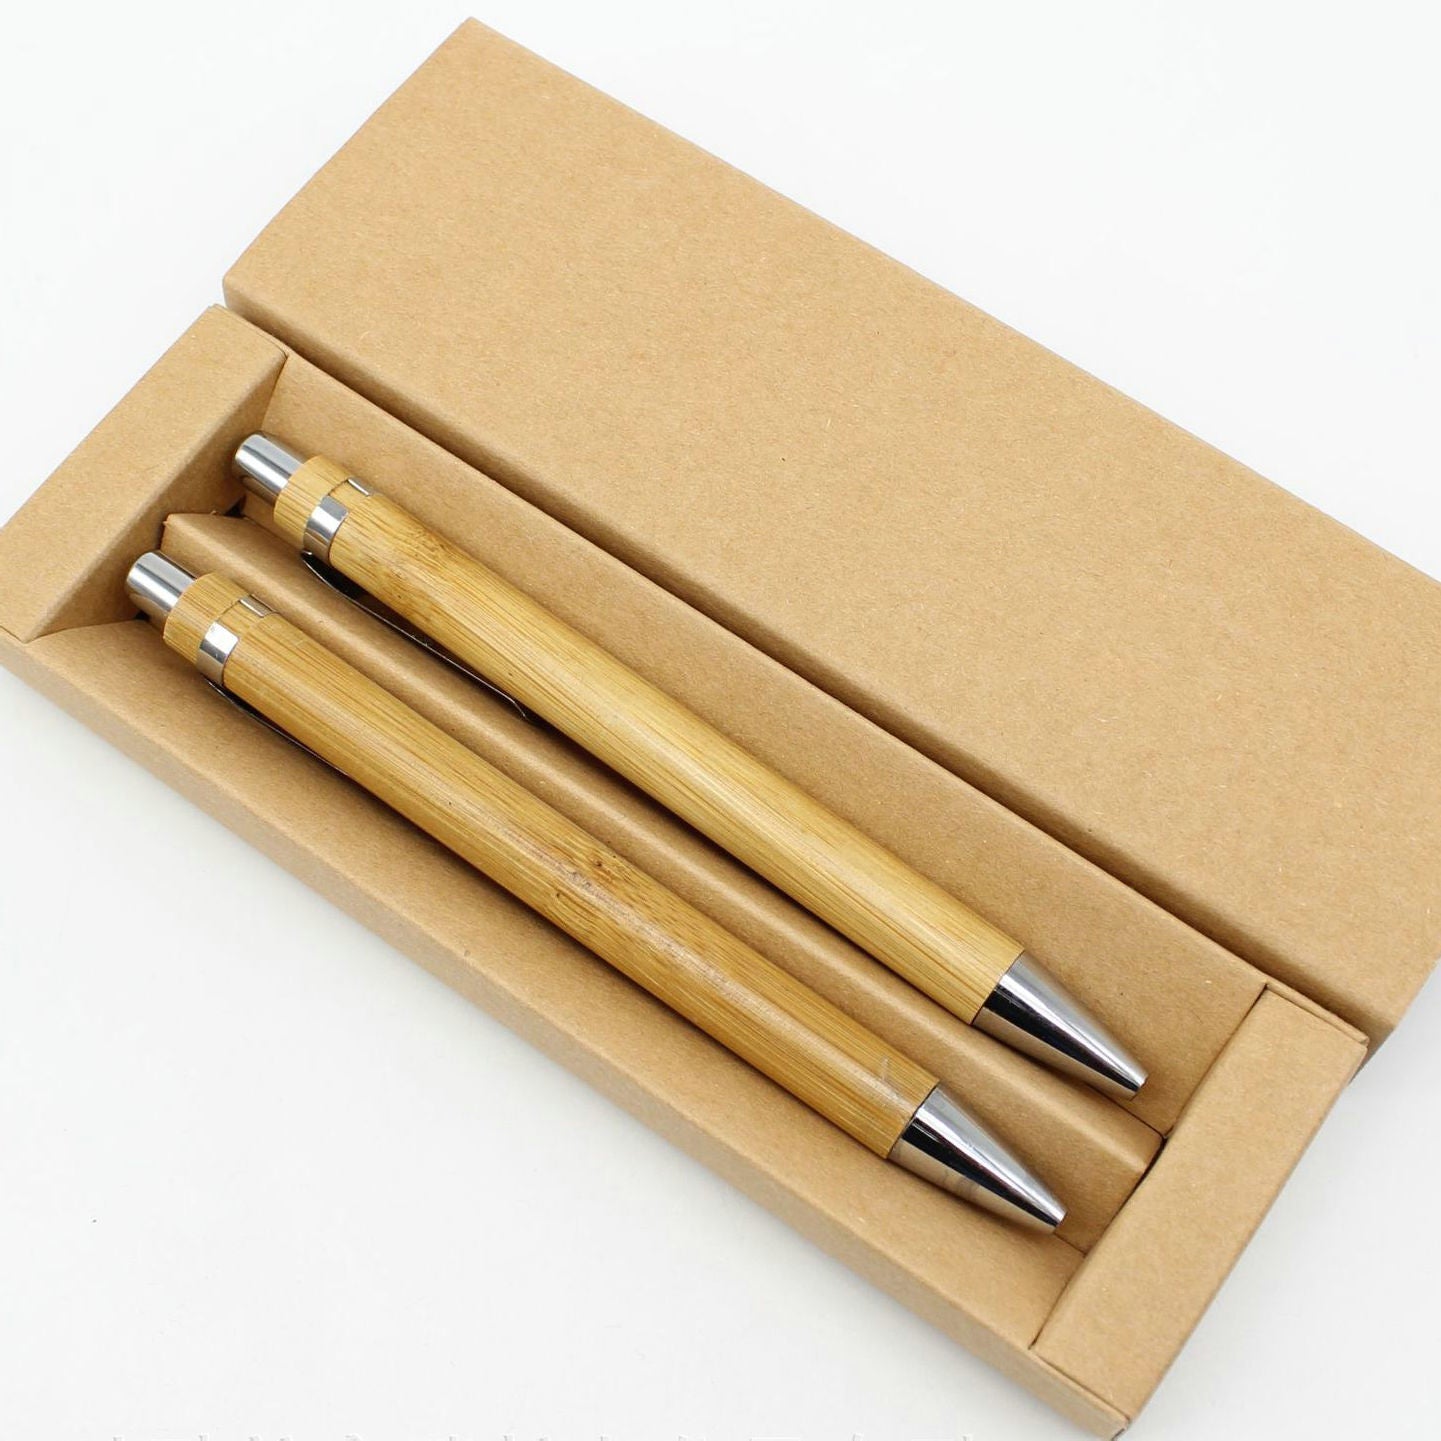 【客製化】竹木套裝兩件禮盒對筆組 | 禮品、贈品專業客製禮贈品顧問 | 禮品、贈品專屬客製禮贈品專家